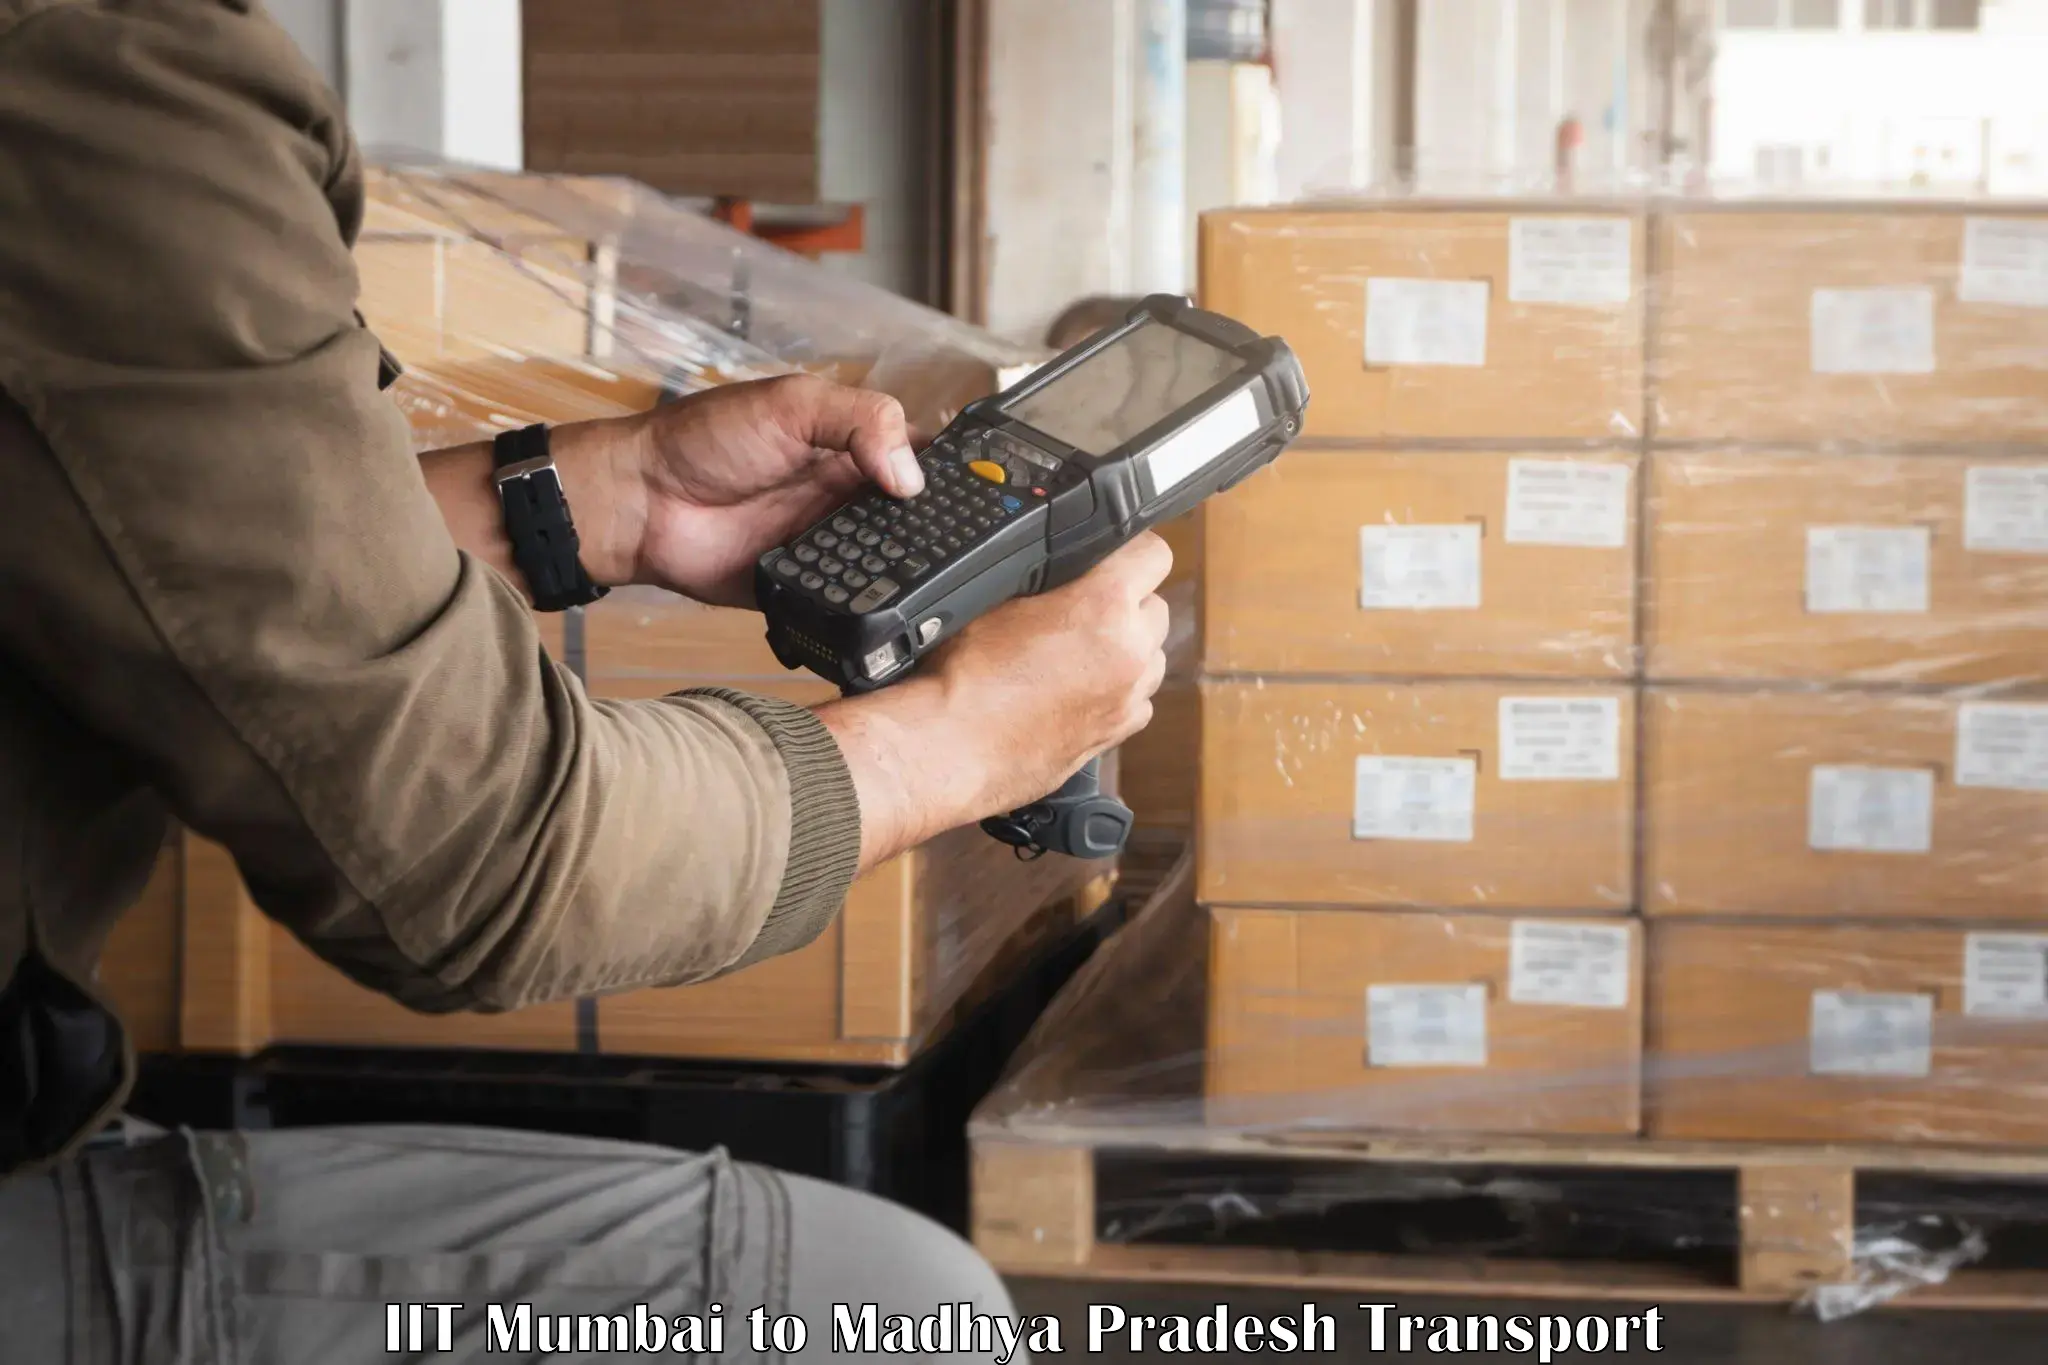 Furniture transport service IIT Mumbai to Raisen